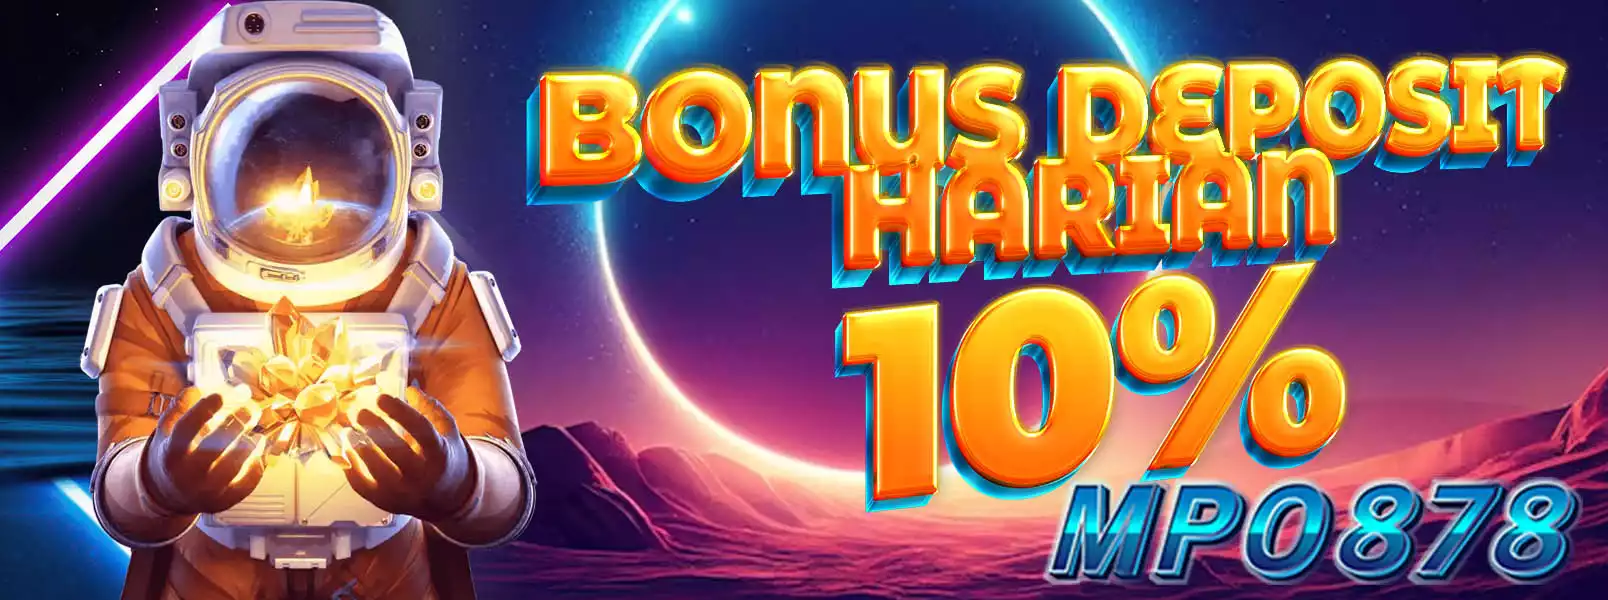 Bonus Deposit Harian Slot 10%